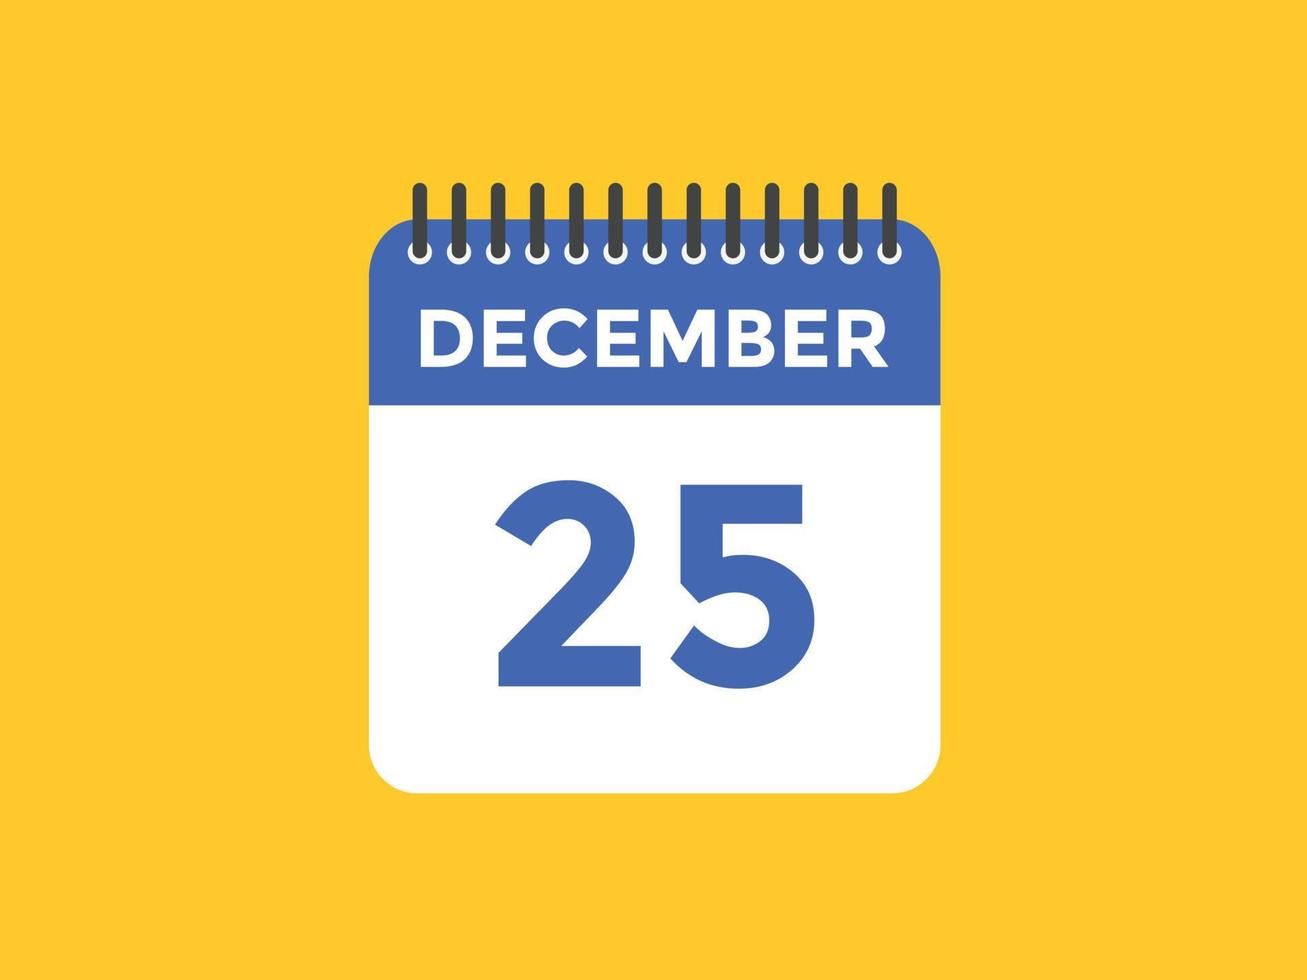 Recordatorio del calendario del 25 de diciembre. Plantilla de icono de calendario diario del 25 de diciembre. plantilla de diseño de icono de calendario 25 de diciembre. ilustración vectorial vector